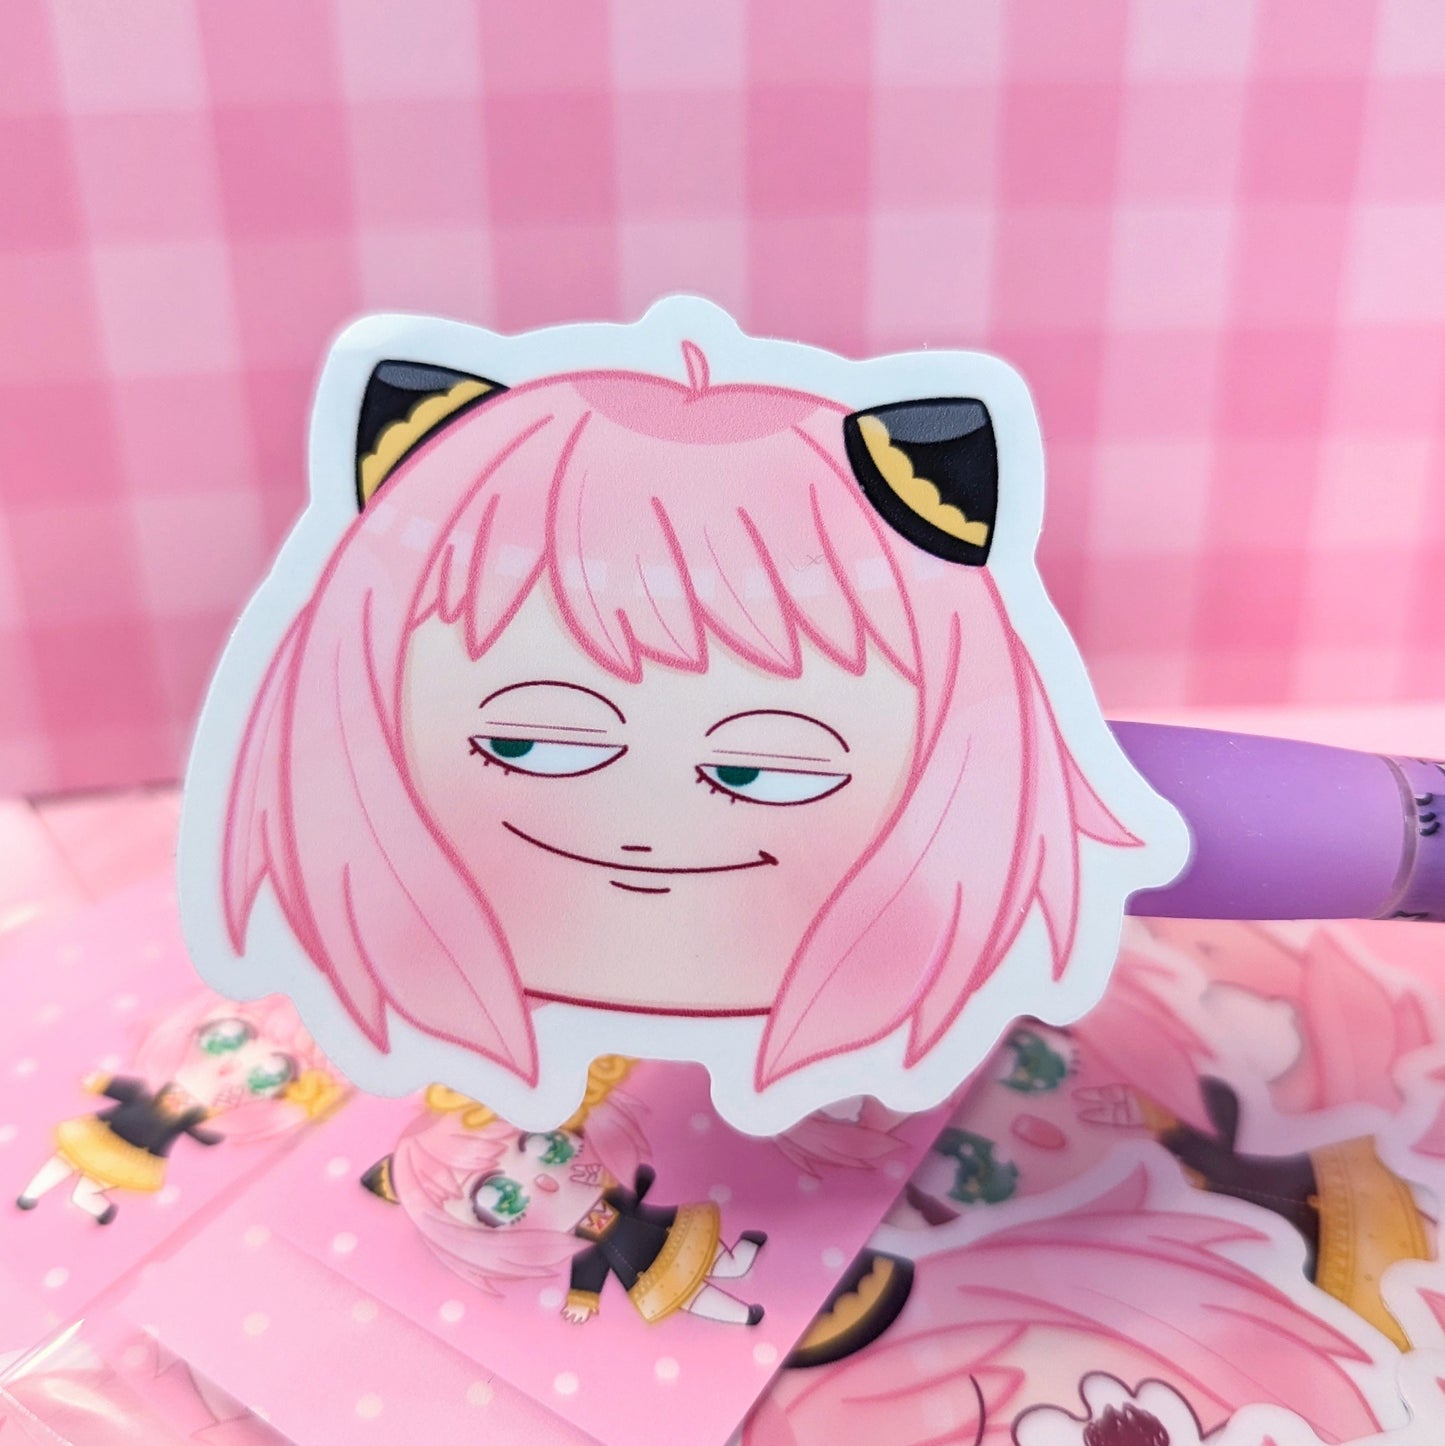 Kawaii girl sticker pack